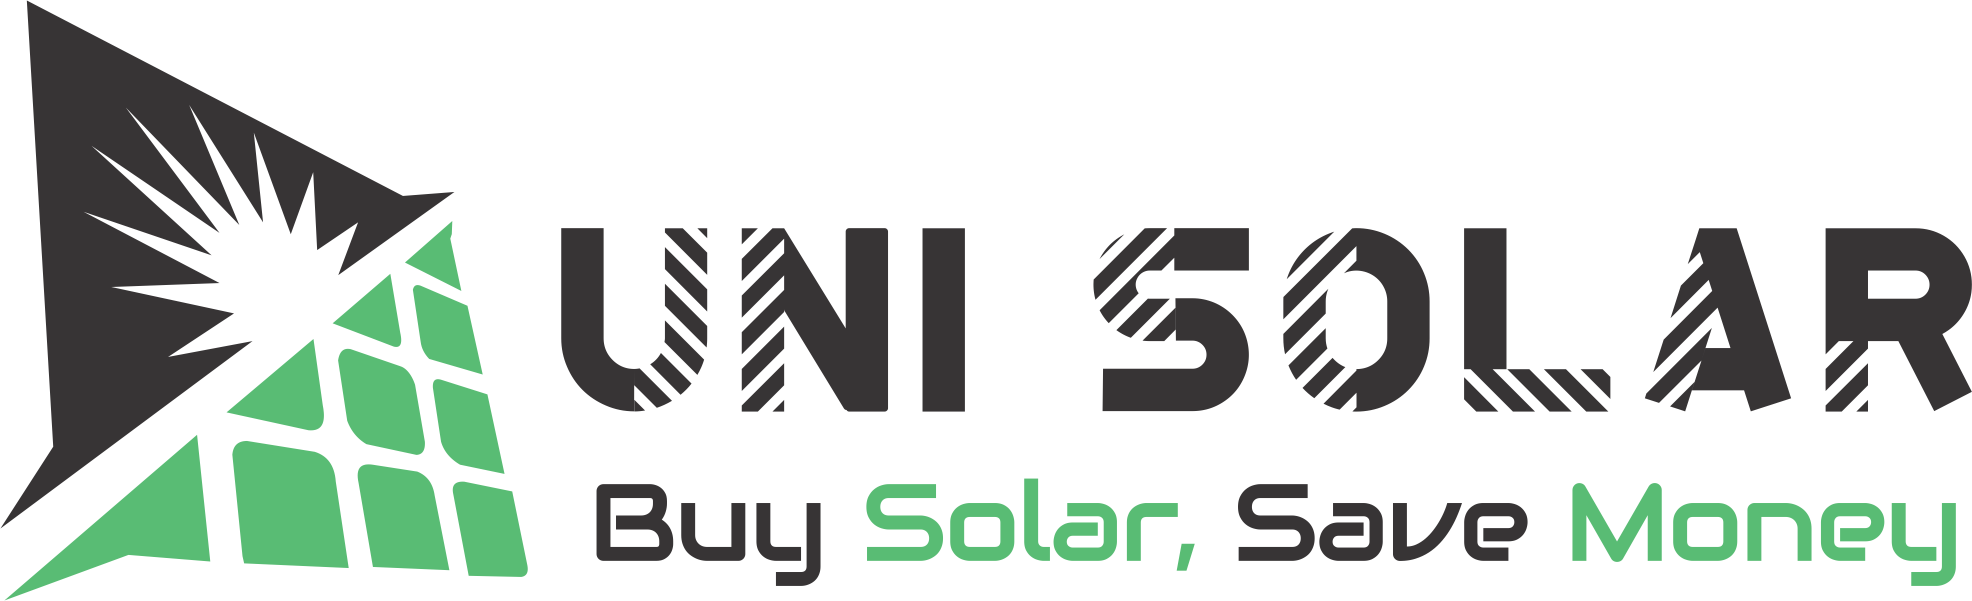 best solar company in Pakistan logo